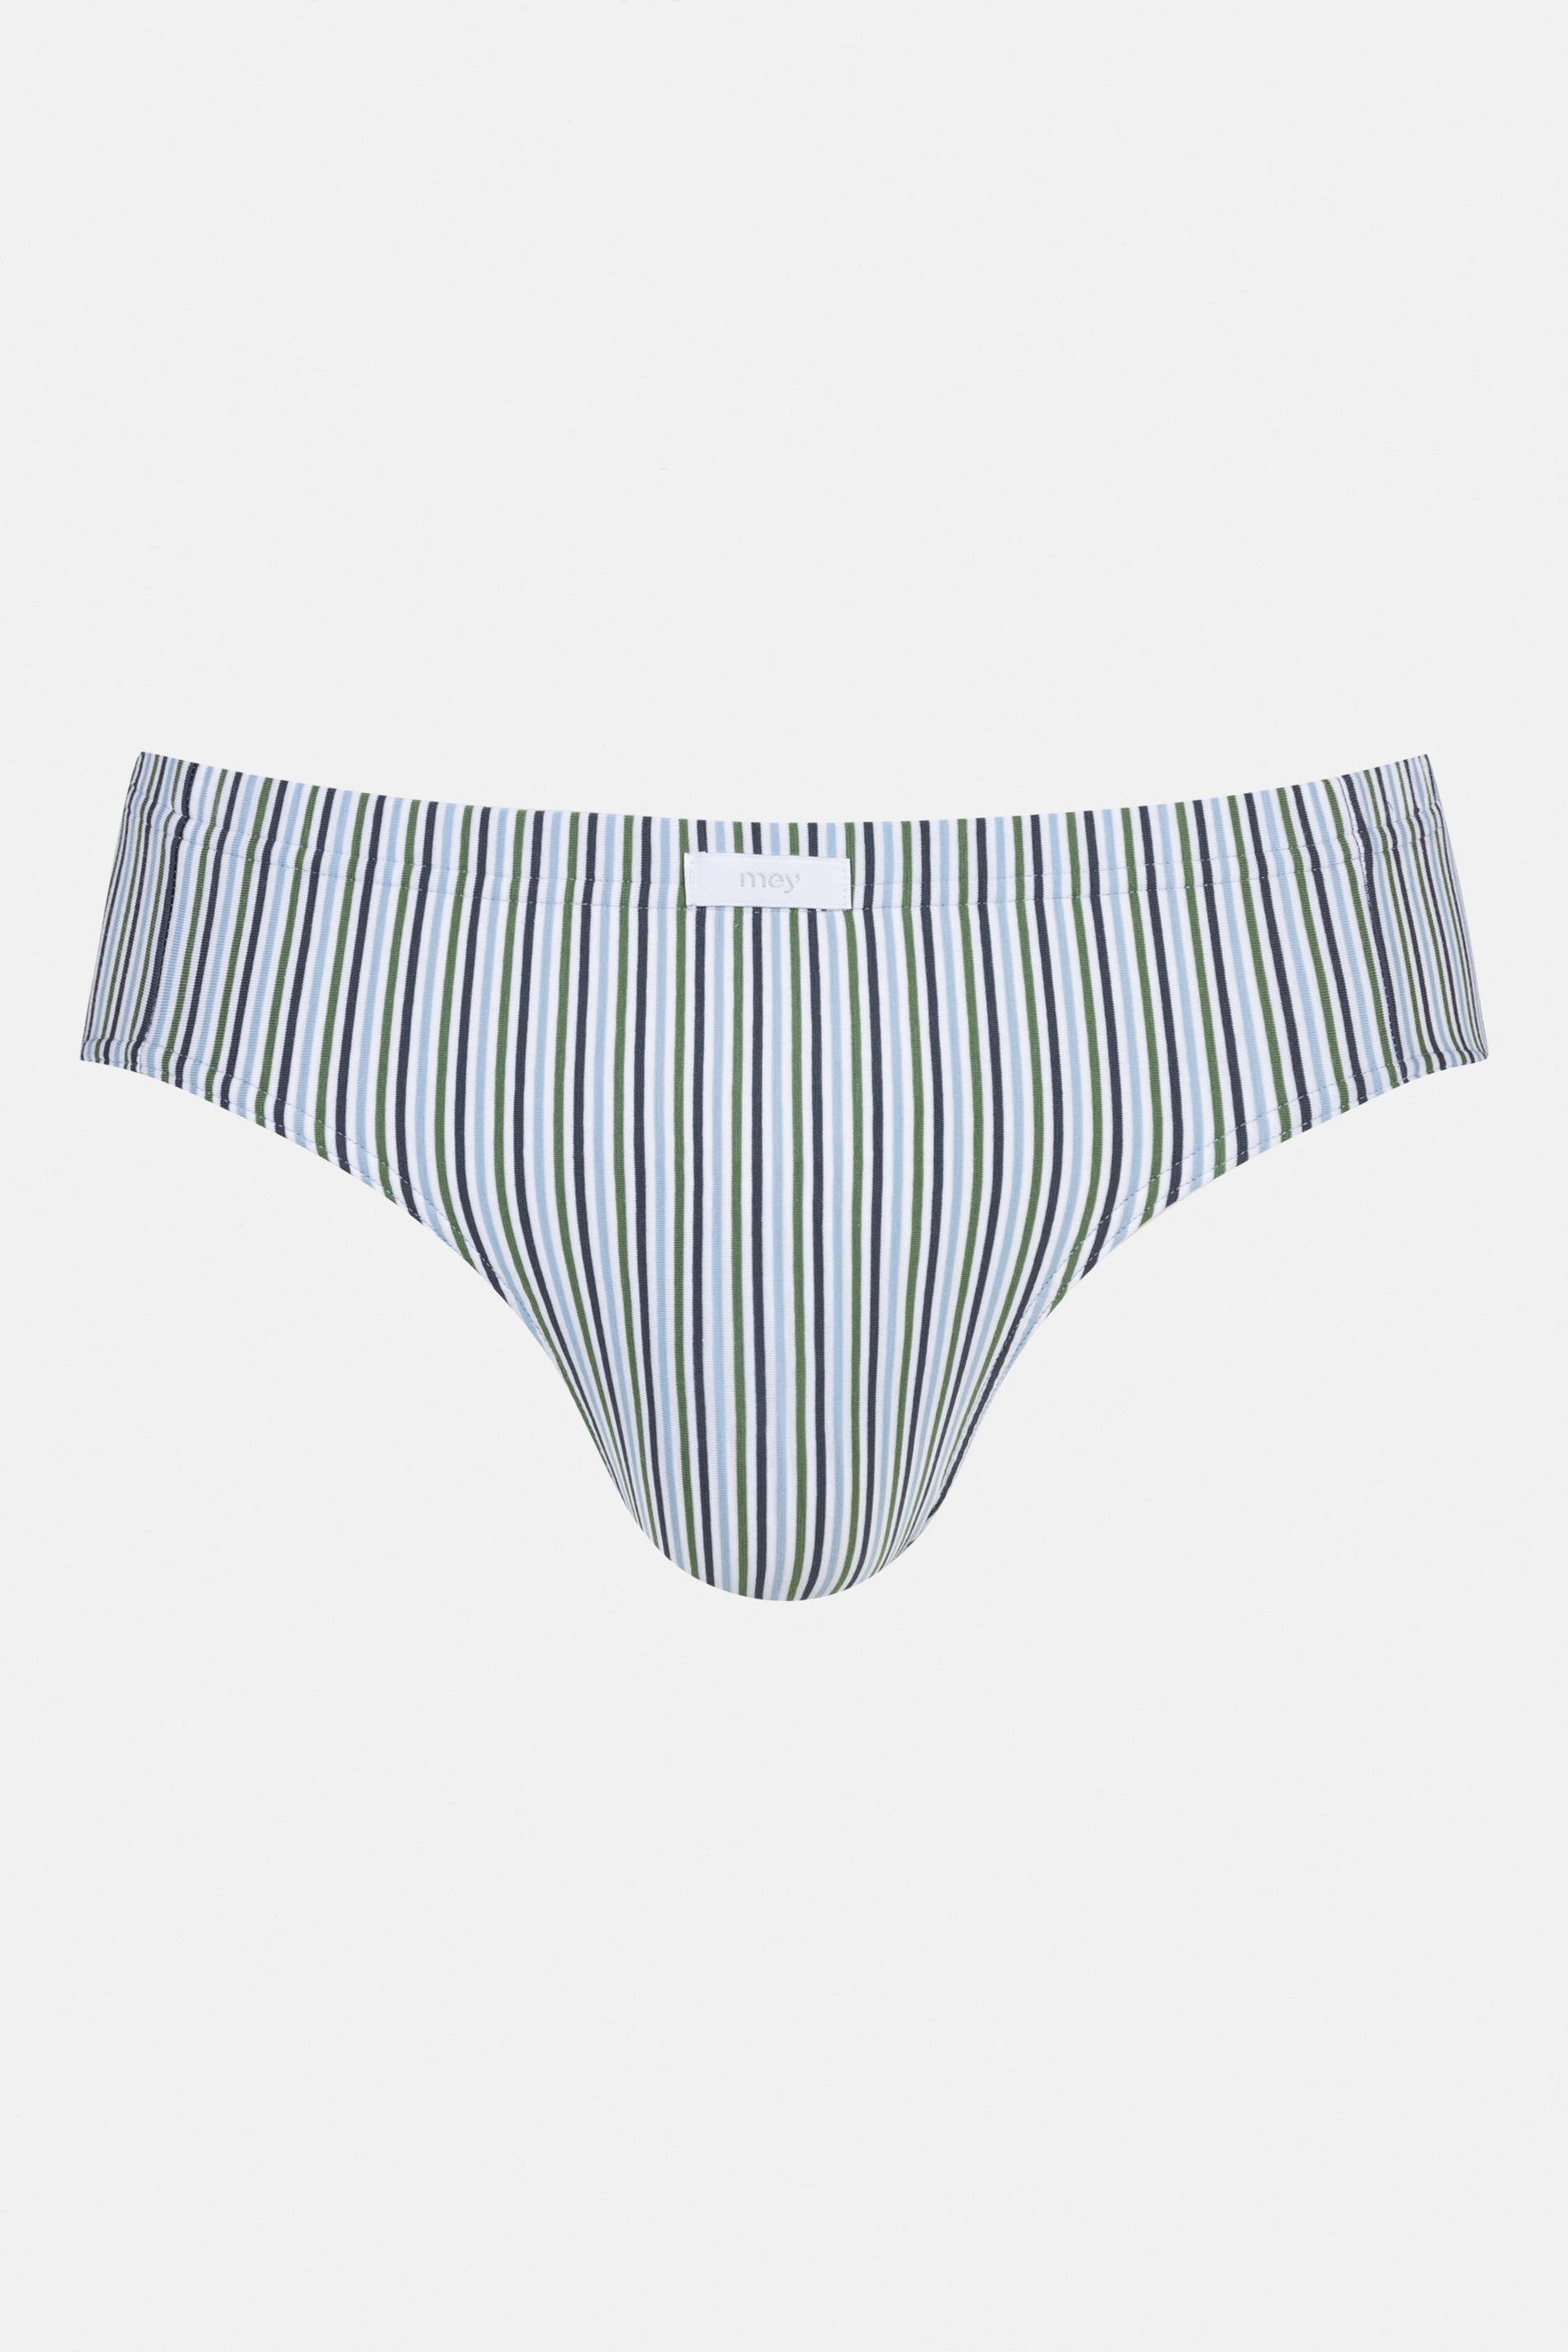 Jazz Pants Serie Light Stripes Freisteller | mey®